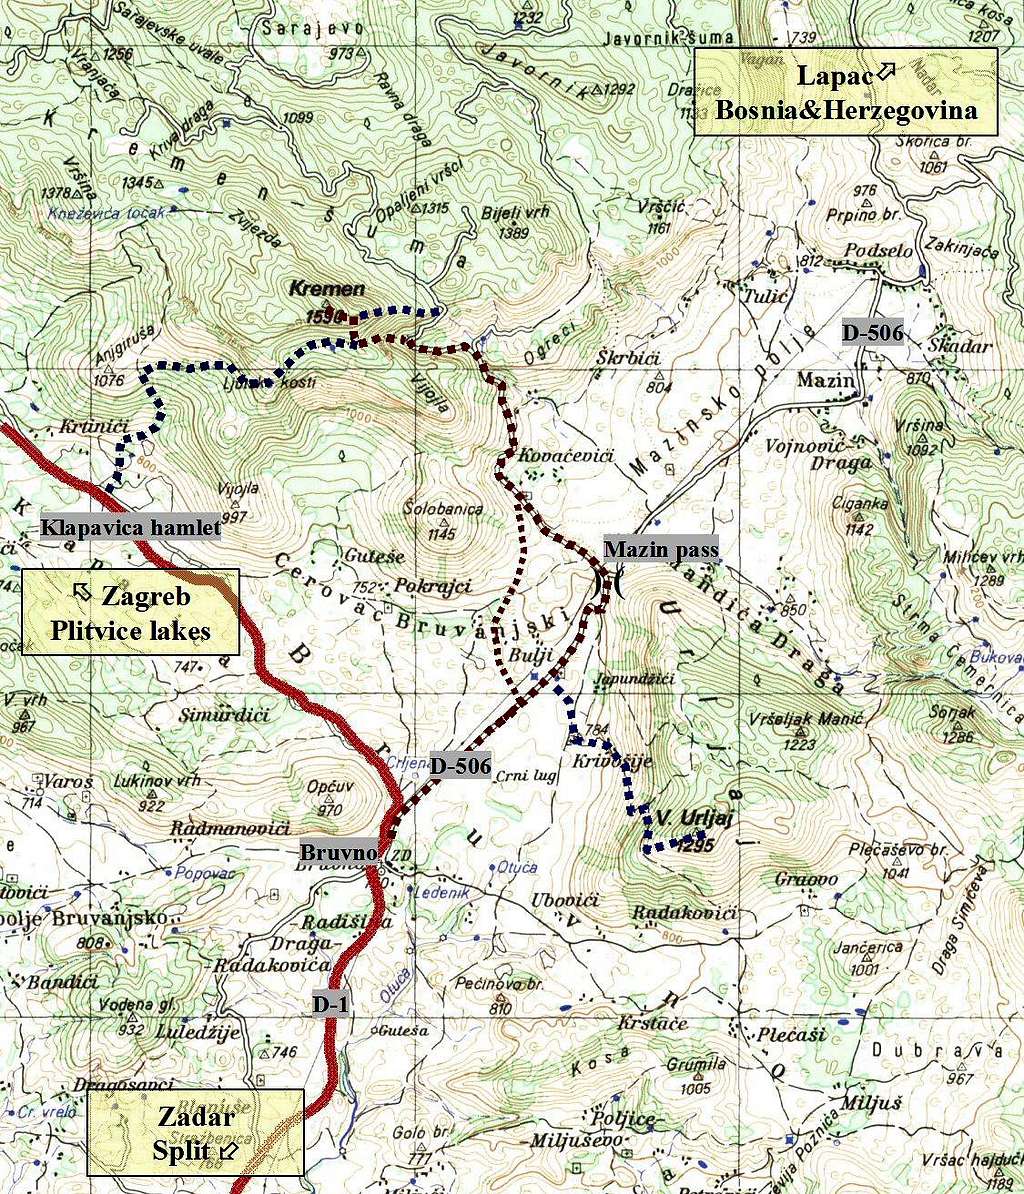 Kremen - Hiking map